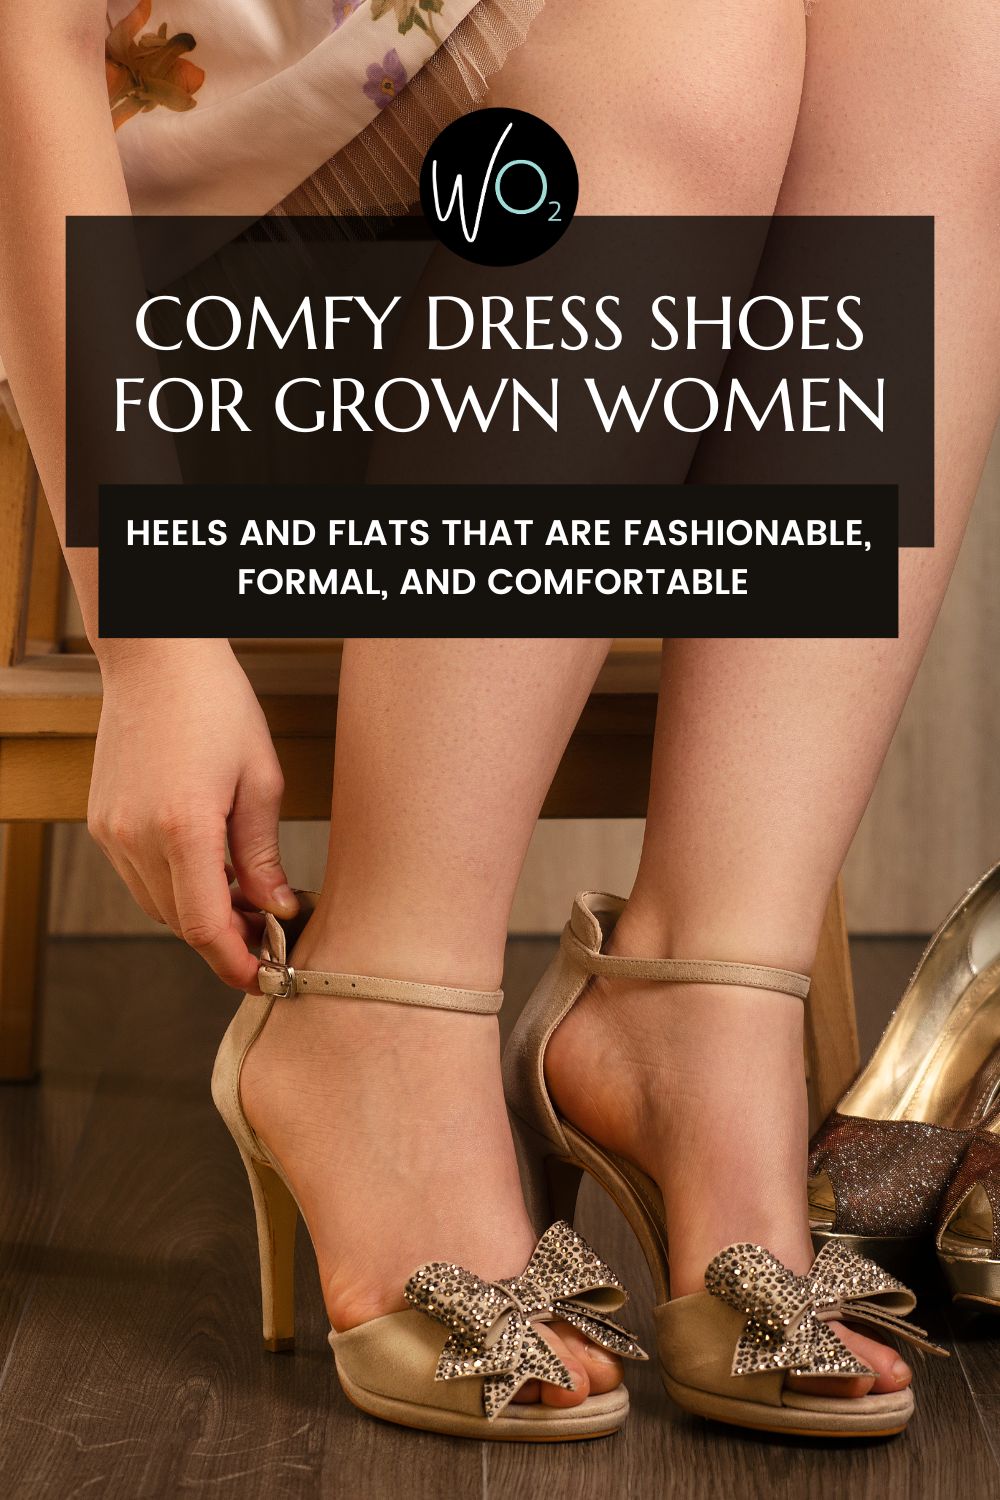 Comfy Dress Shoes for Grown-ass Women - Wardrobe Oxygen